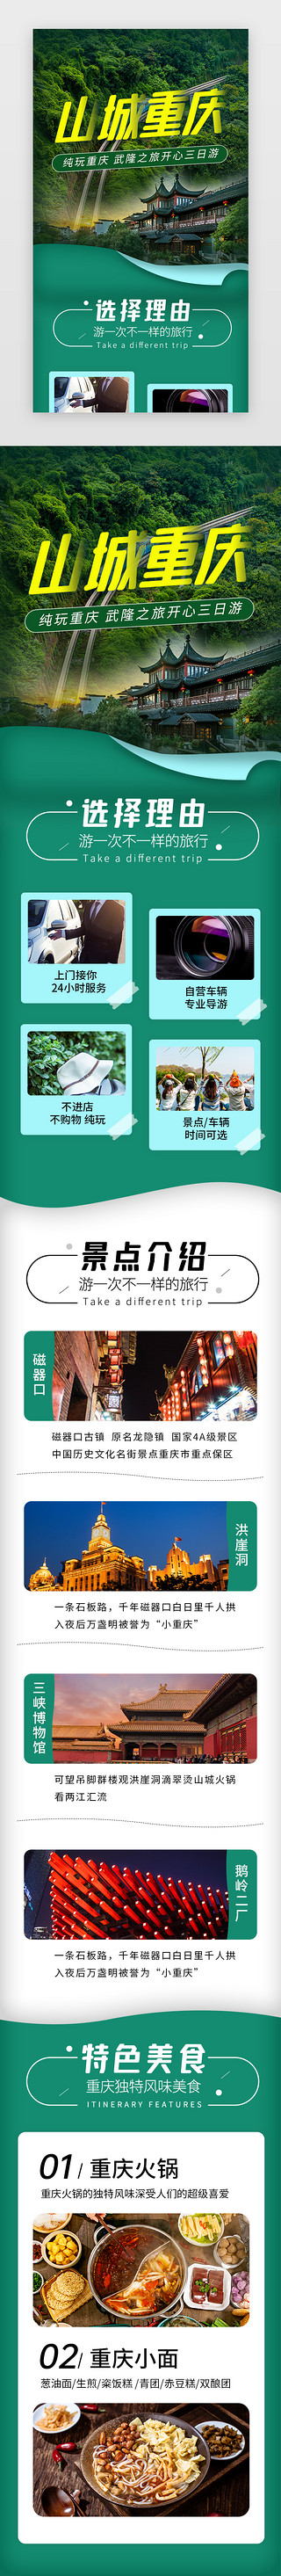 品牌介绍列表页UI设计素材_山城重庆旅游景点介绍H5长图